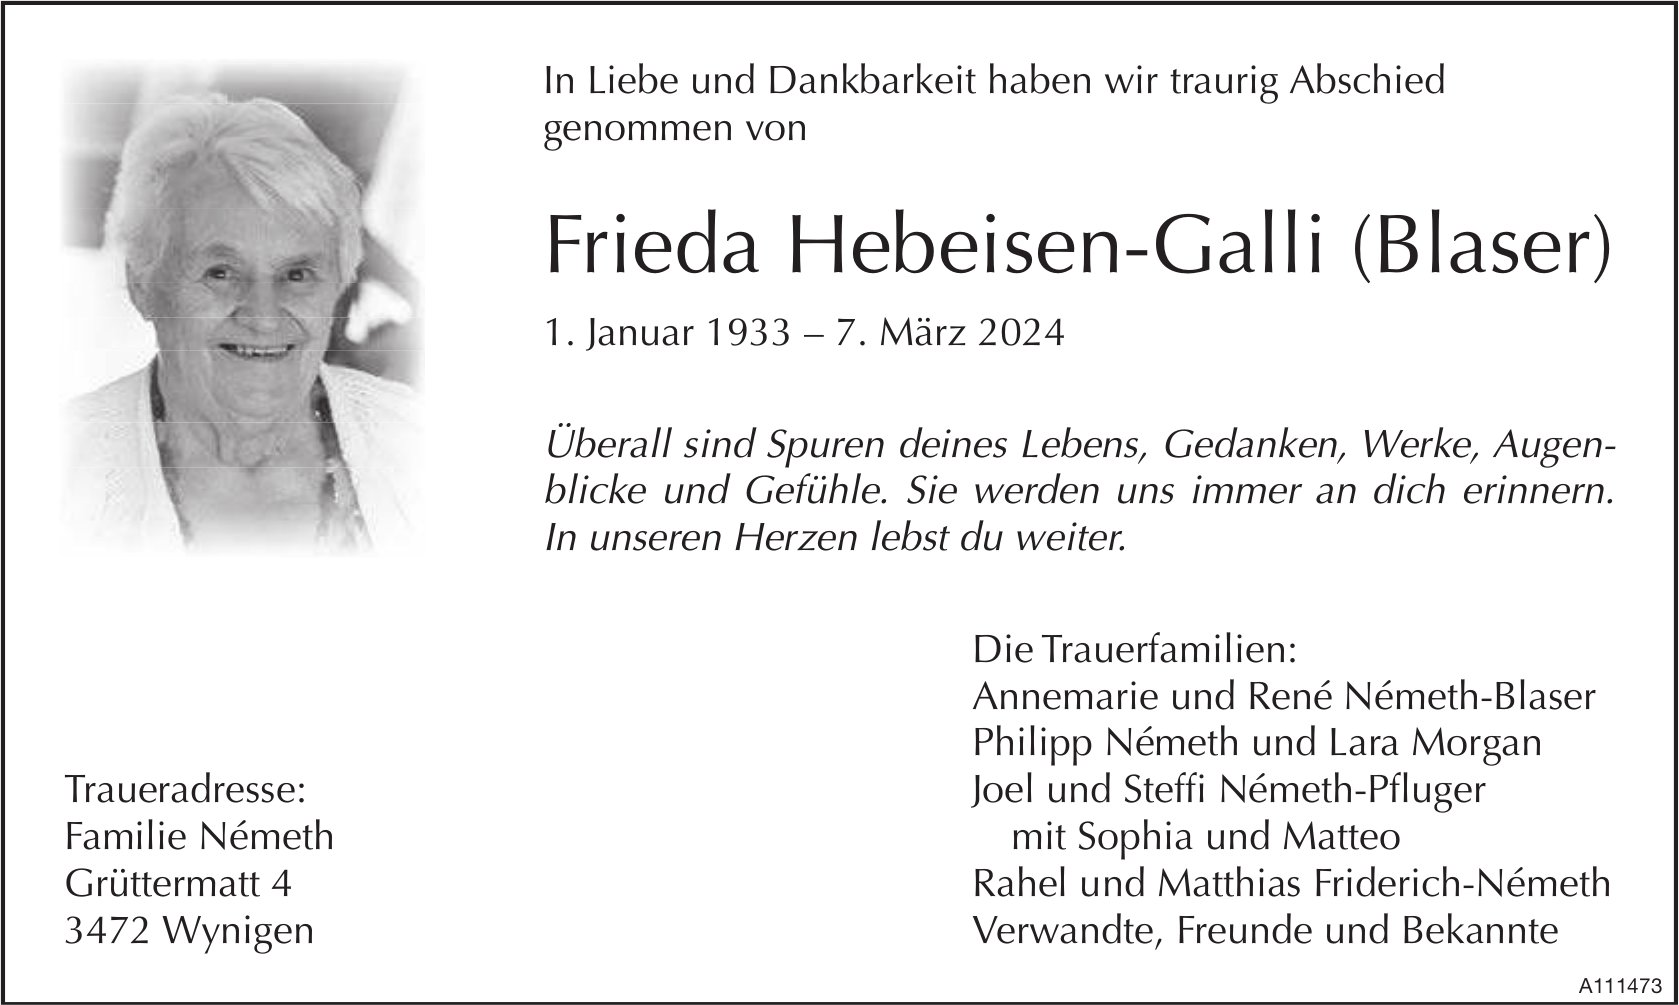 Frieda Hebeisen-Galli (Blaser), März 2024 / TA